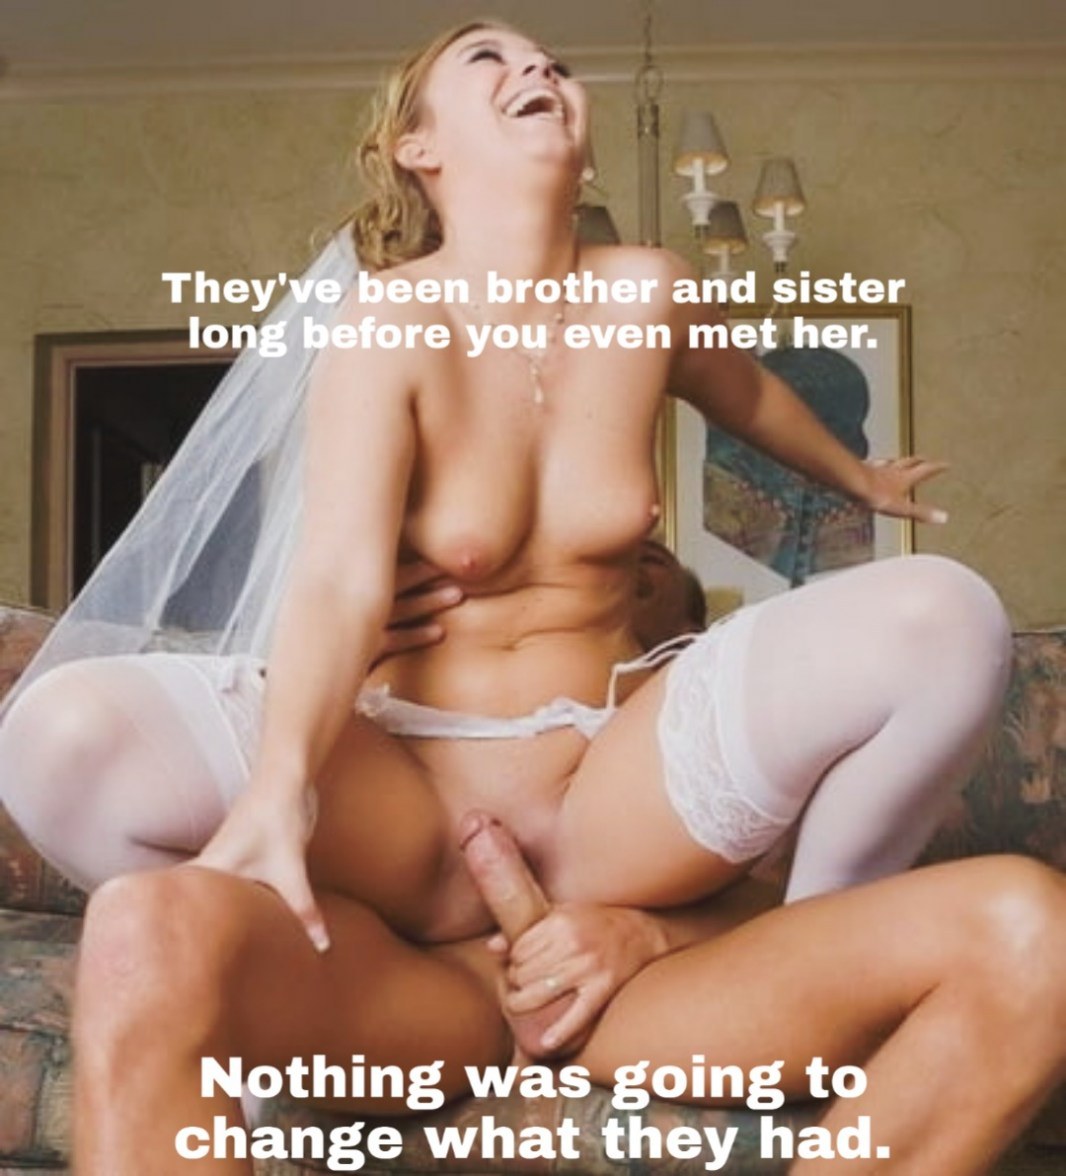 Невесты в порно видео. Секс с невестами. Смотреть онлайн порно на rebcentr-alyans.ru